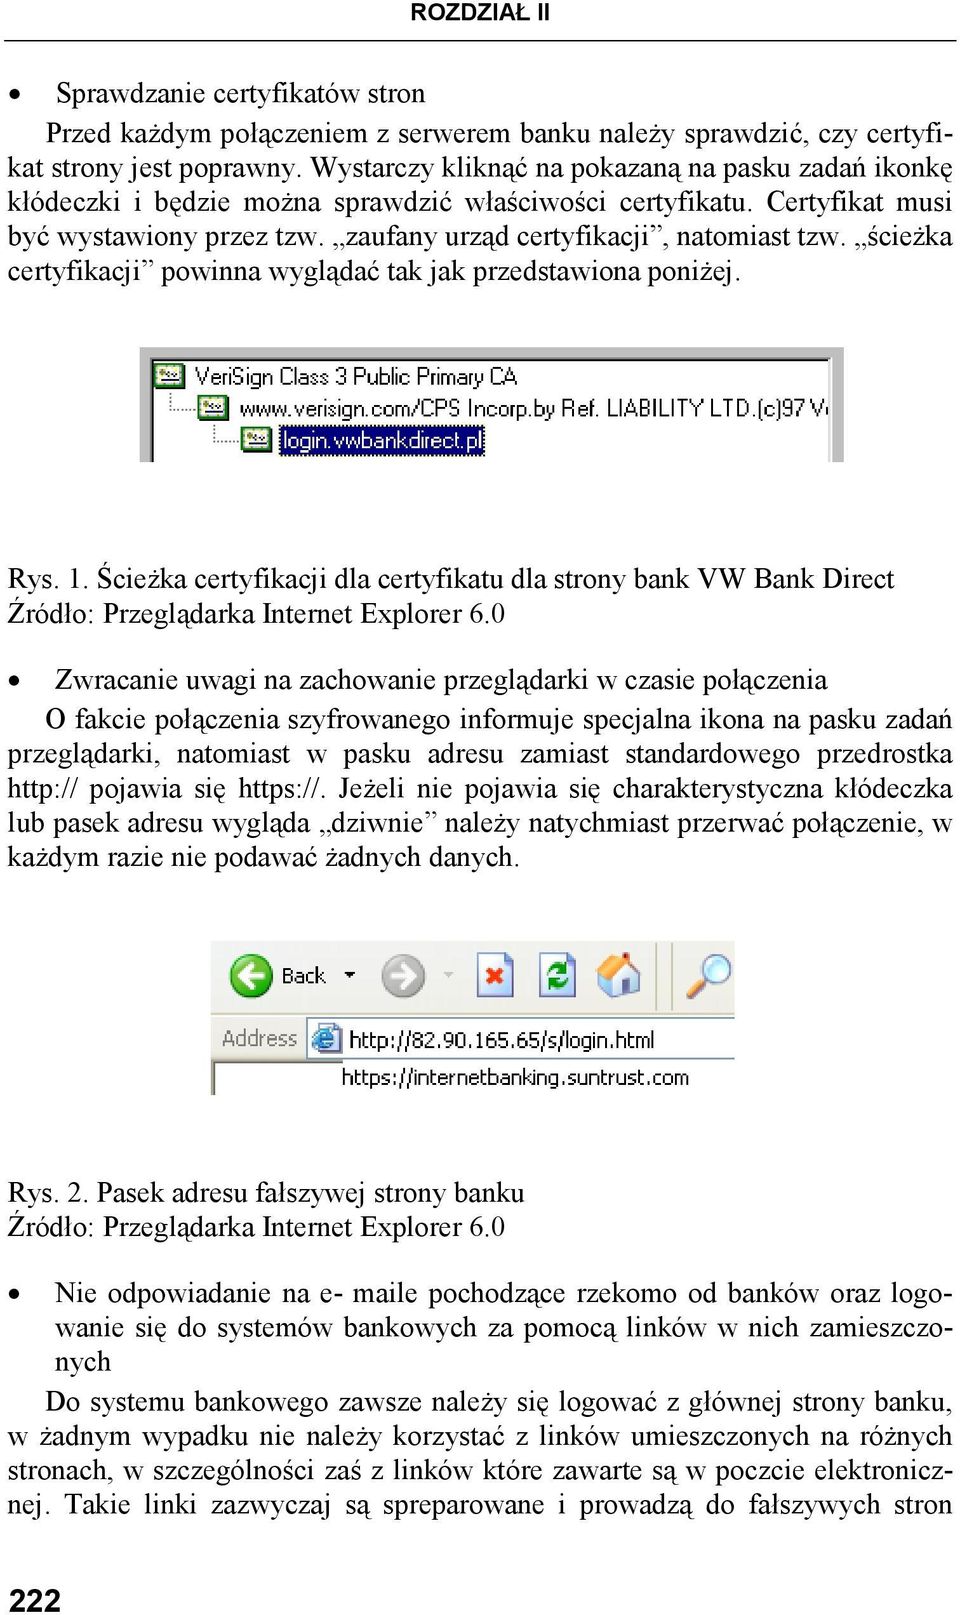 ścieŝka certyfikacji powinna wyglądać tak jak przedstawiona poniŝej. Rys. 1. ŚcieŜka certyfikacji dla certyfikatu dla strony bank VW Bank Direct Źródło: Przeglądarka Internet Explorer 6.